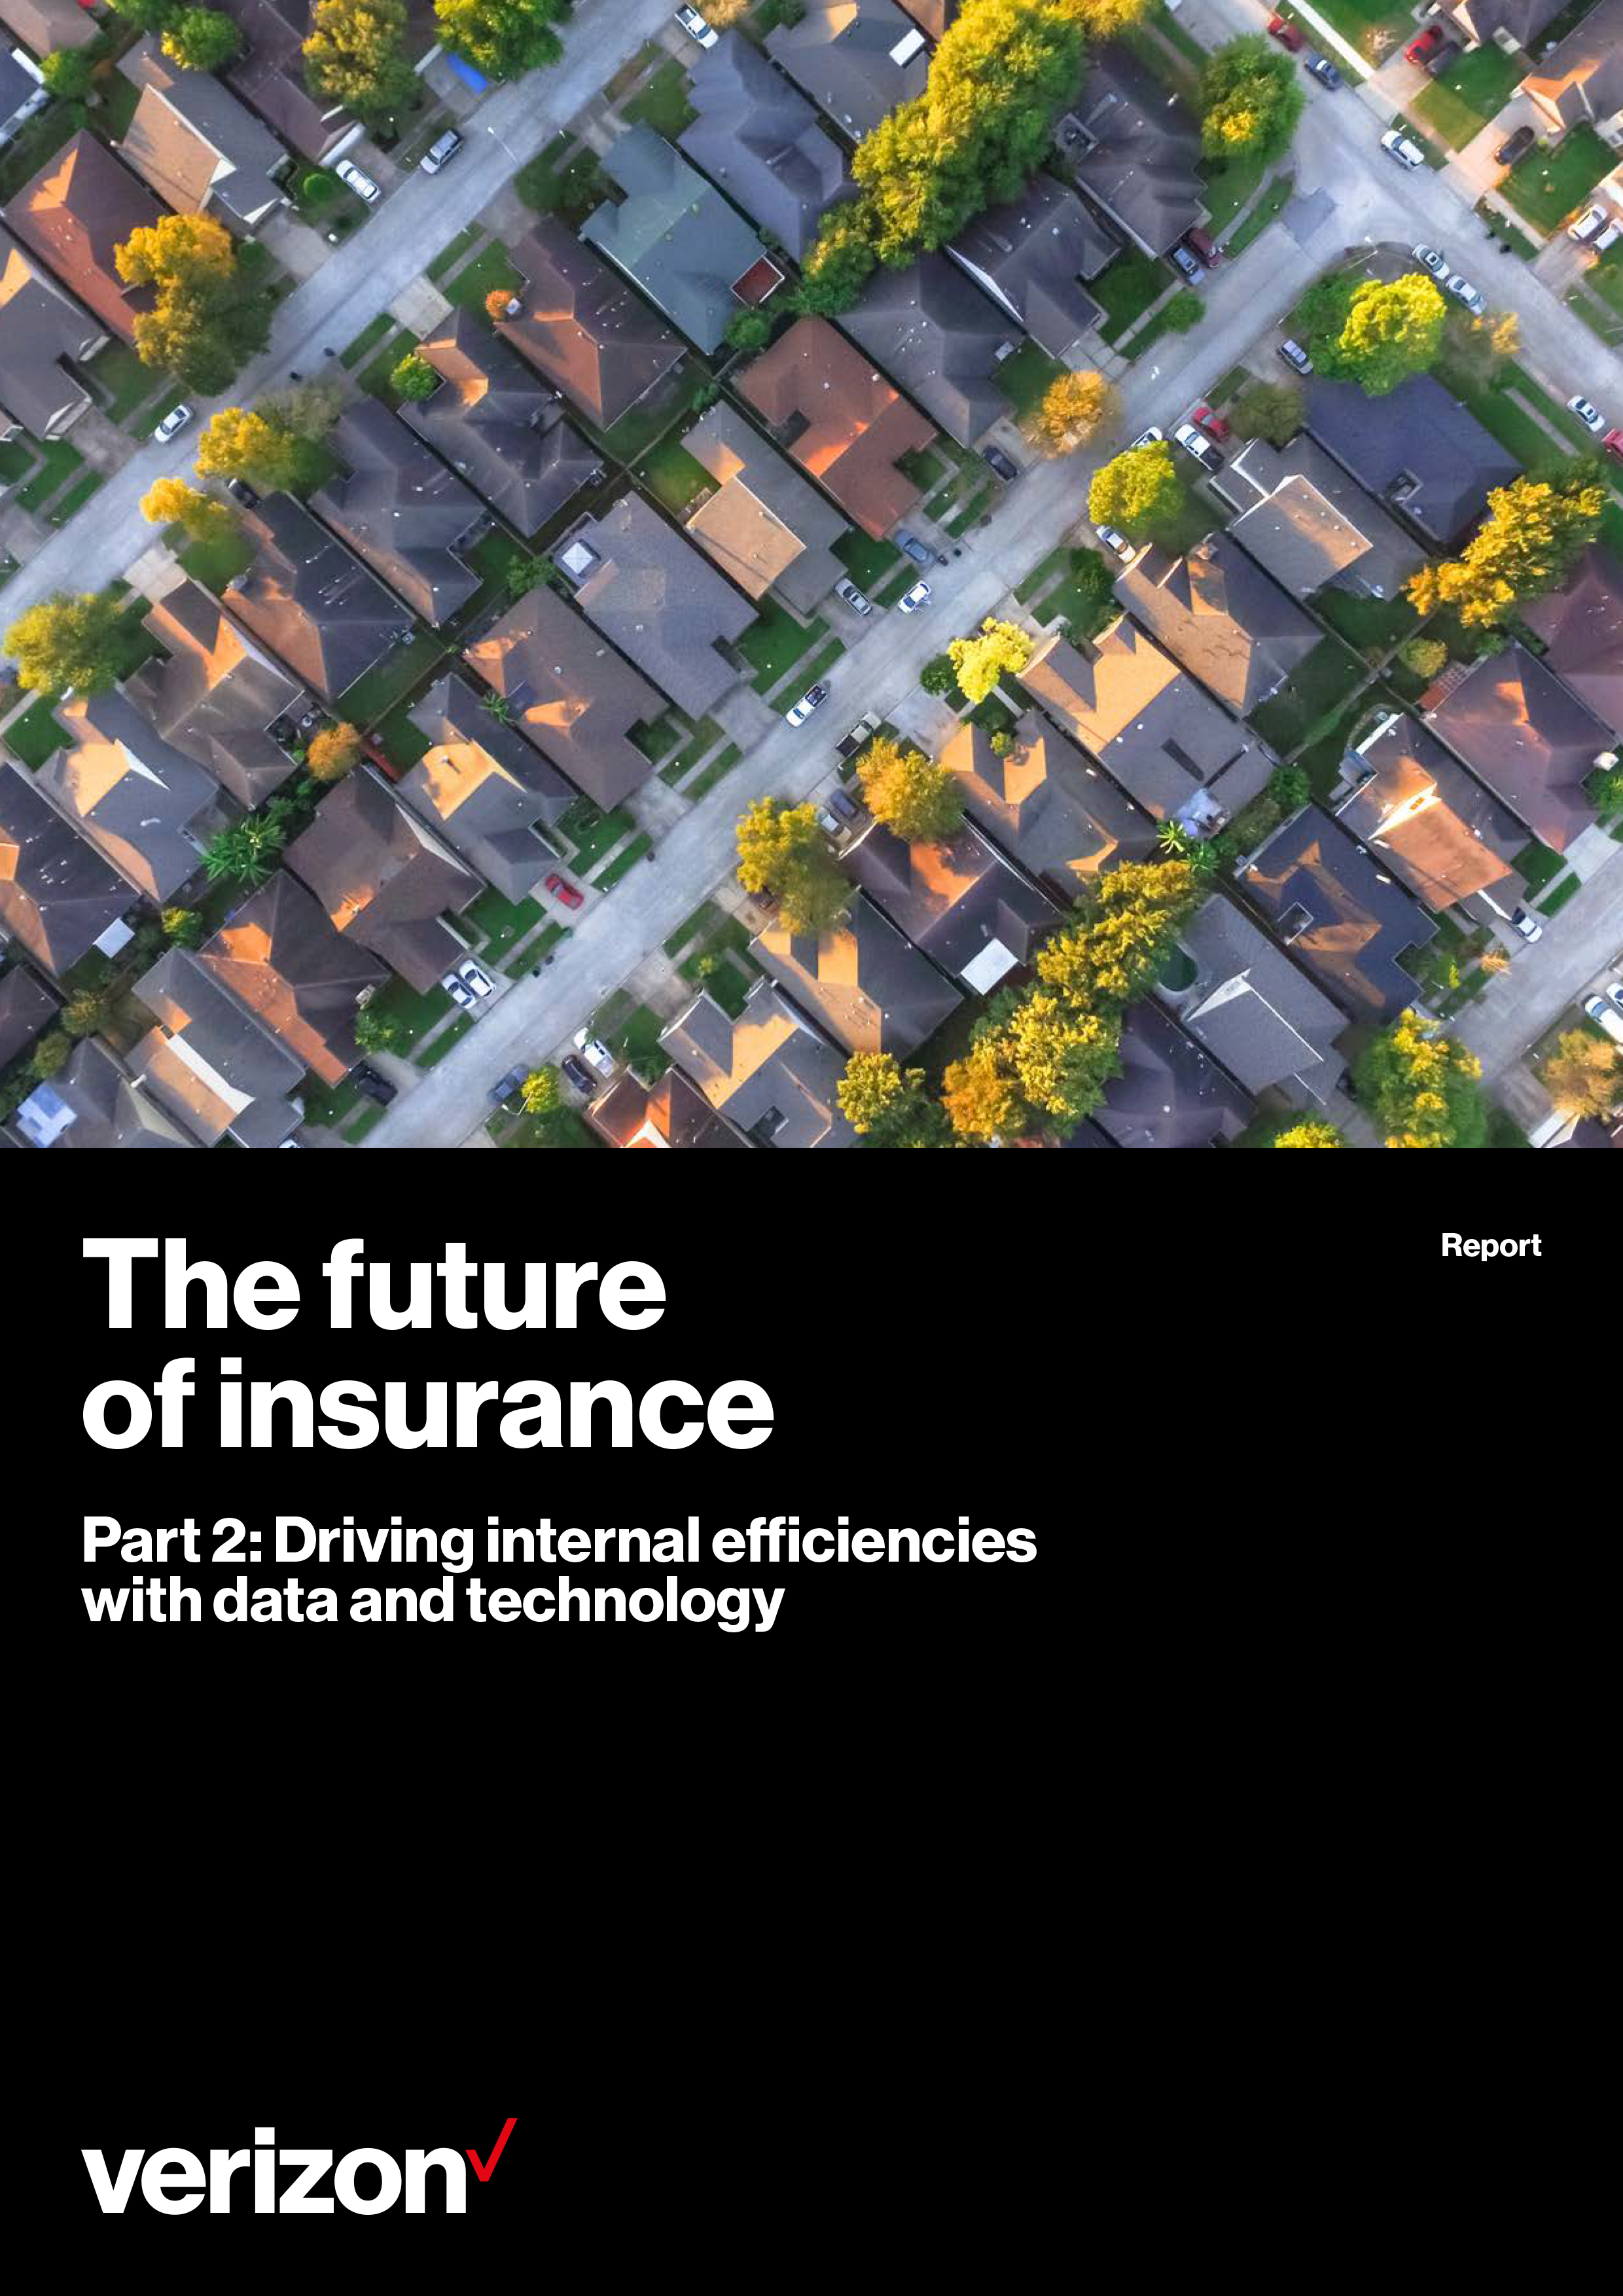 The Future of Insurance 2018 mini report